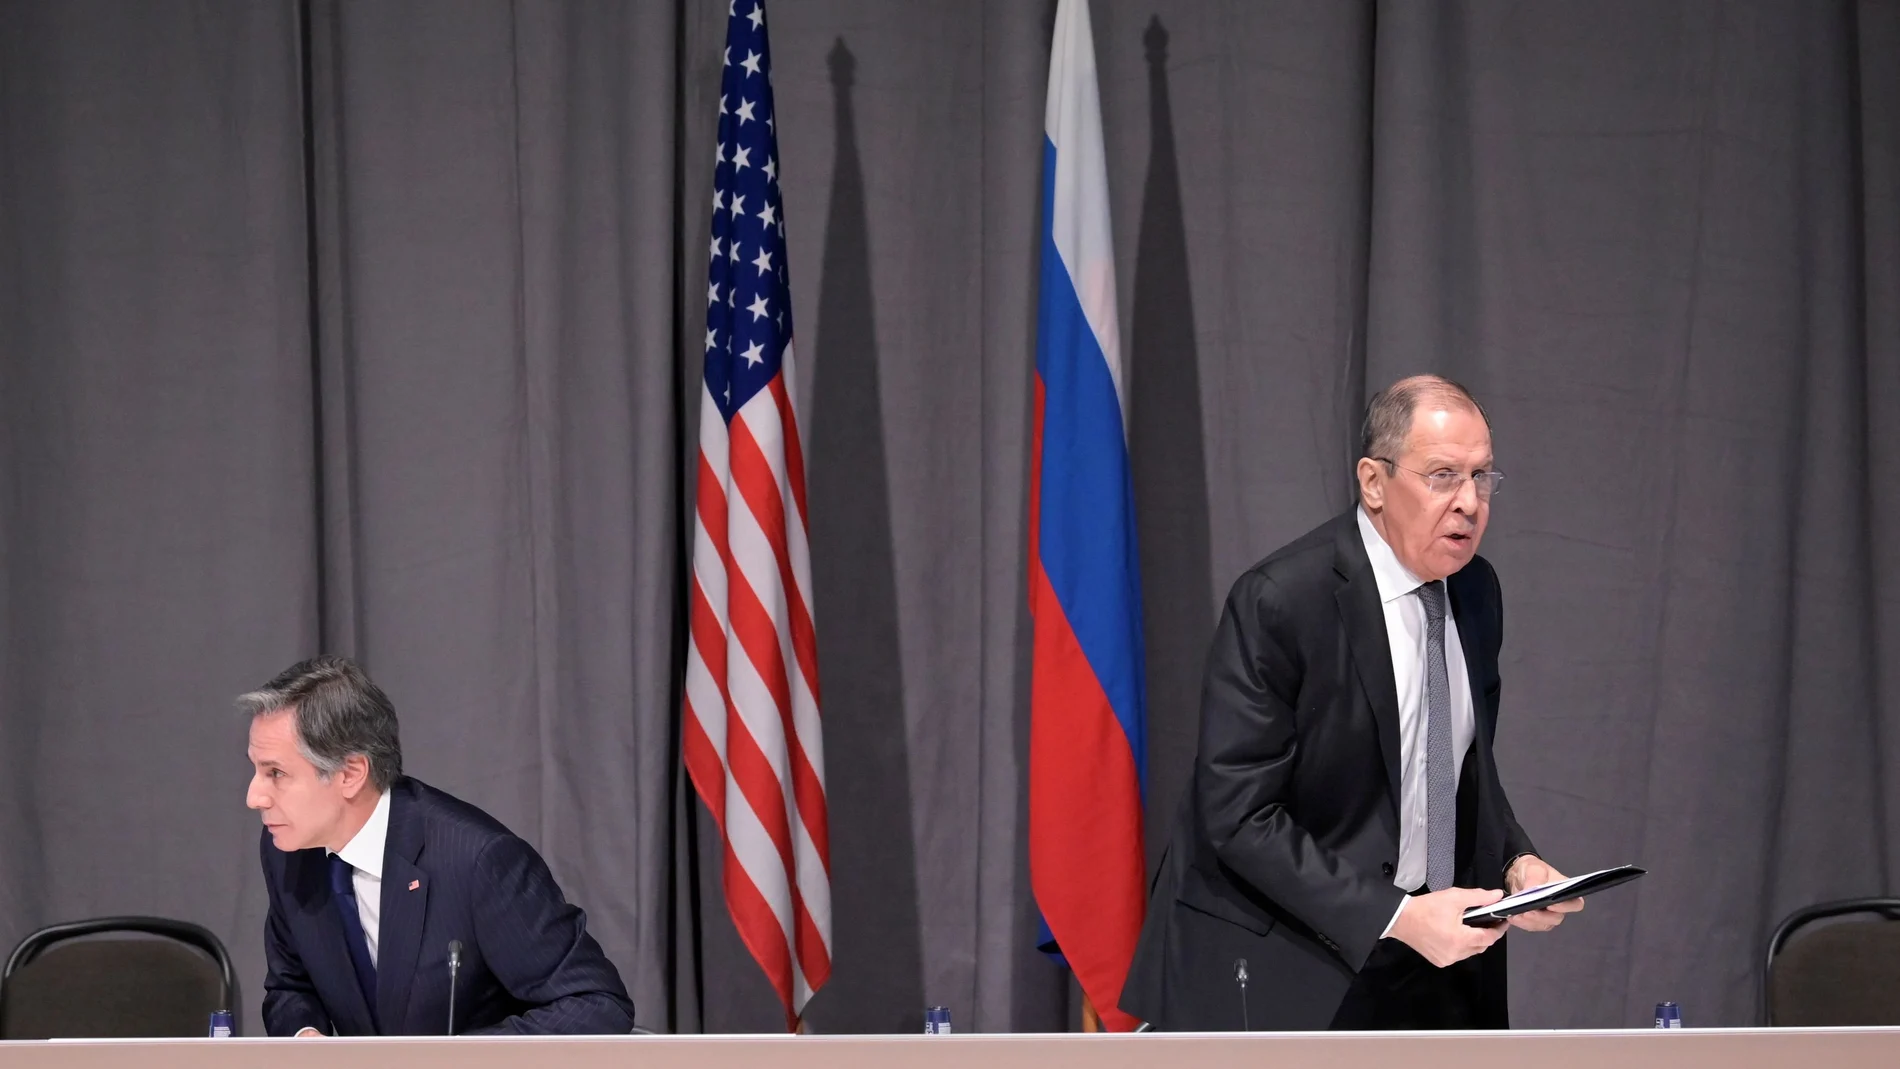 El secretario de Estado, Antony Blinken, y su homólogo ruso, Sergei Lavrov, se reunieron este jueves en Estocolmo